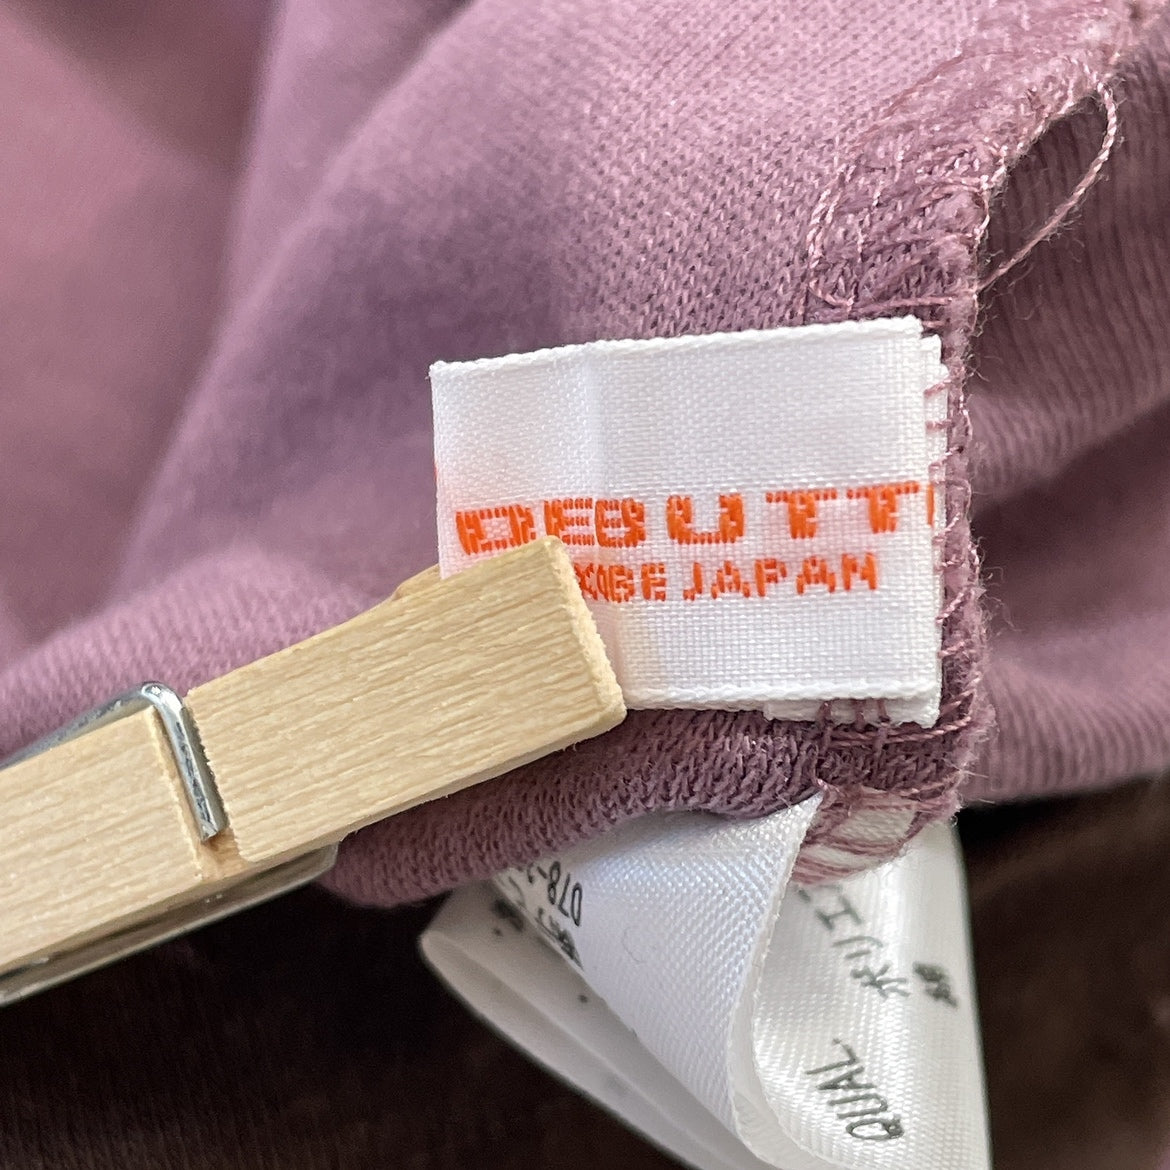 【21325】 DEBUTTO デブット Tシャツ タートルネック 茶色 ブラウン 紫 パープル Ｍ 長袖 オシャレ